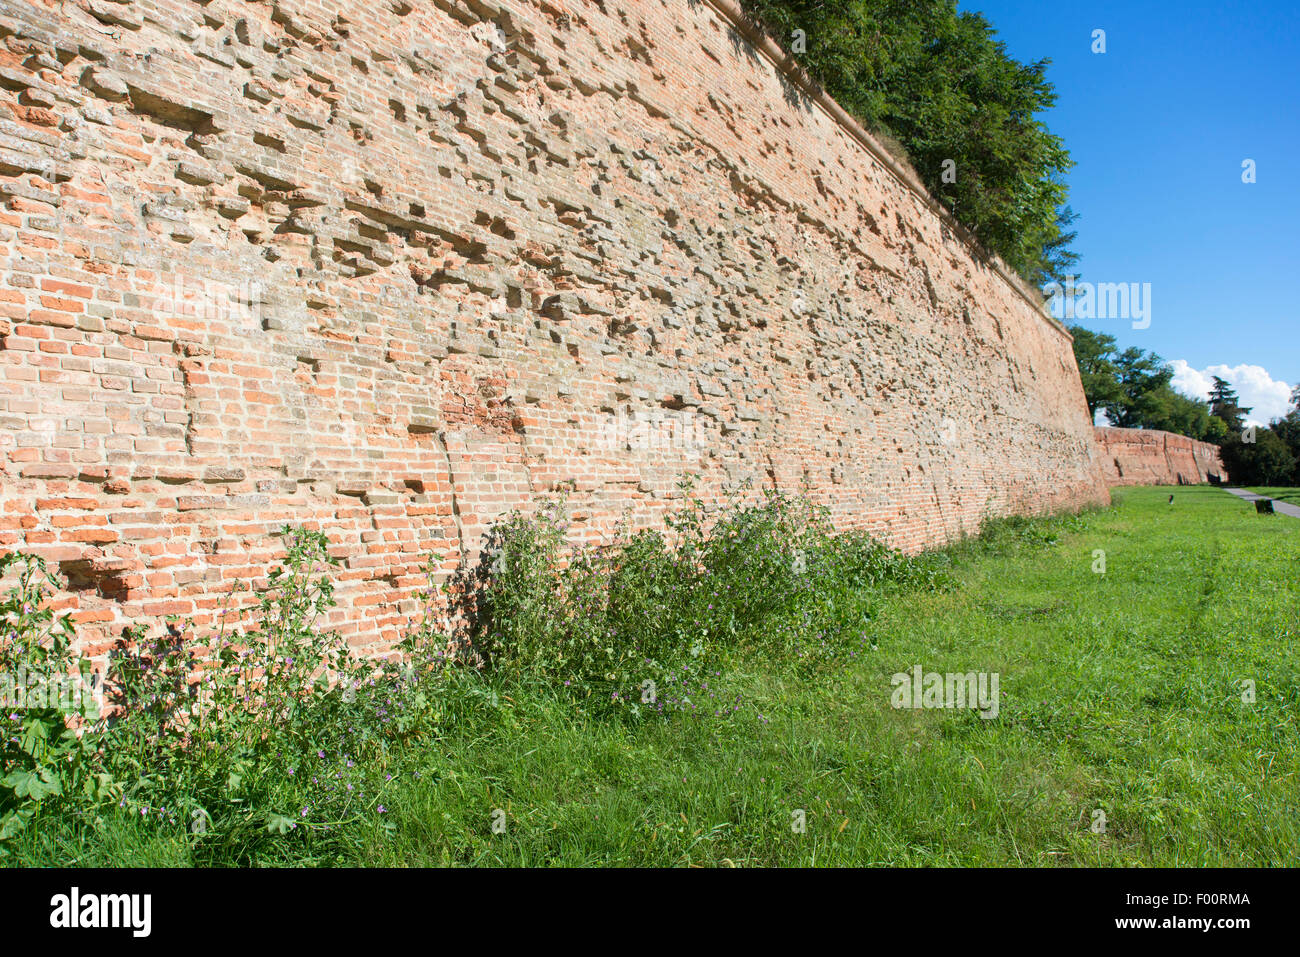 Les murs de la vieille ville, dans la ville médiévale fortifiée de Ferrara en Italie du Nord Banque D'Images